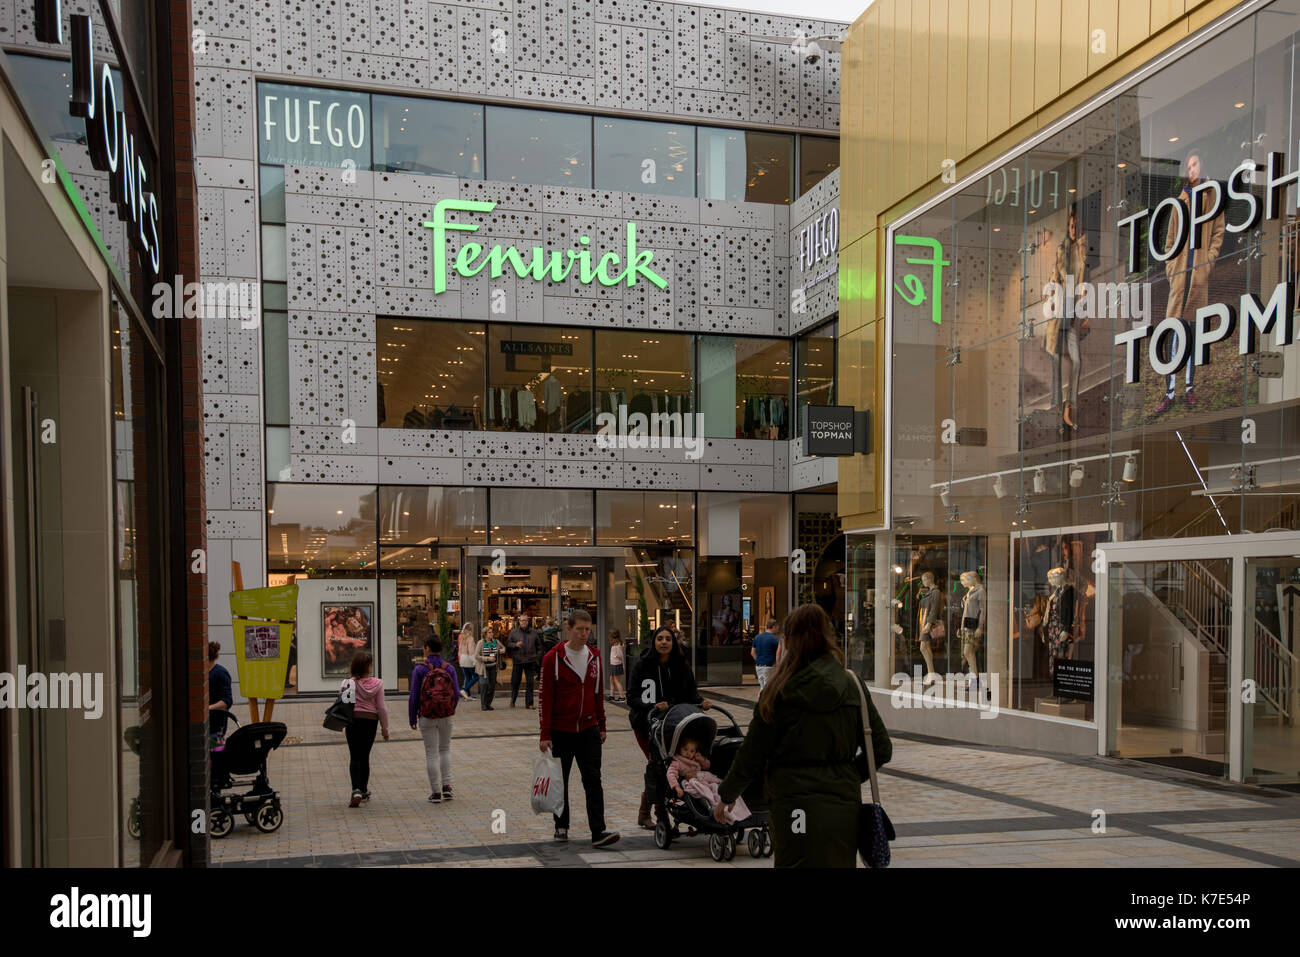 Fenwick magasin de détail dans le centre-ville de Bracknell Berkshire, Royaume-Uni.. Banque D'Images